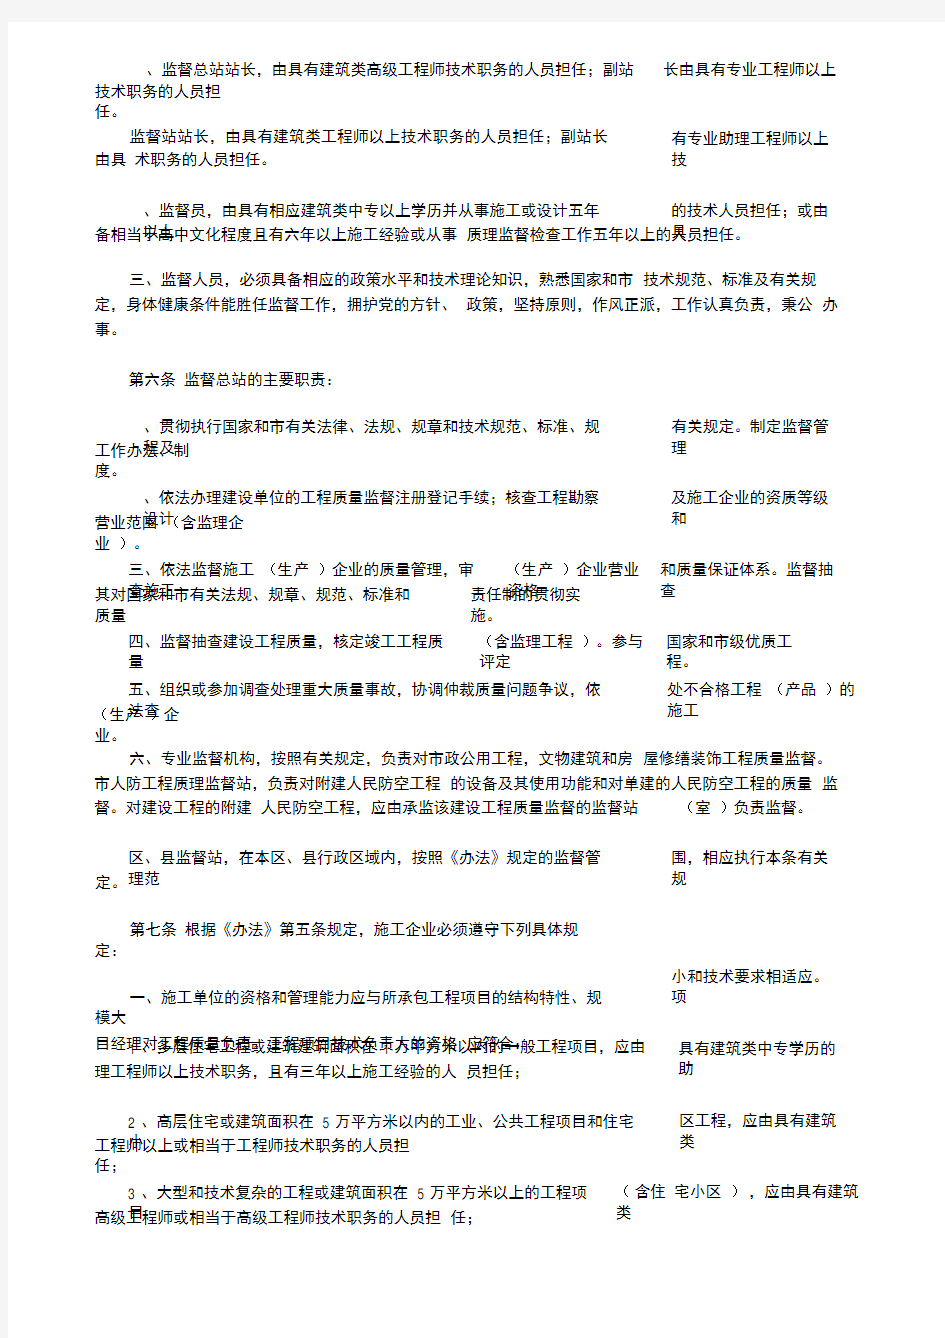 北京市建设工程质量管理监督办法(实施细则)